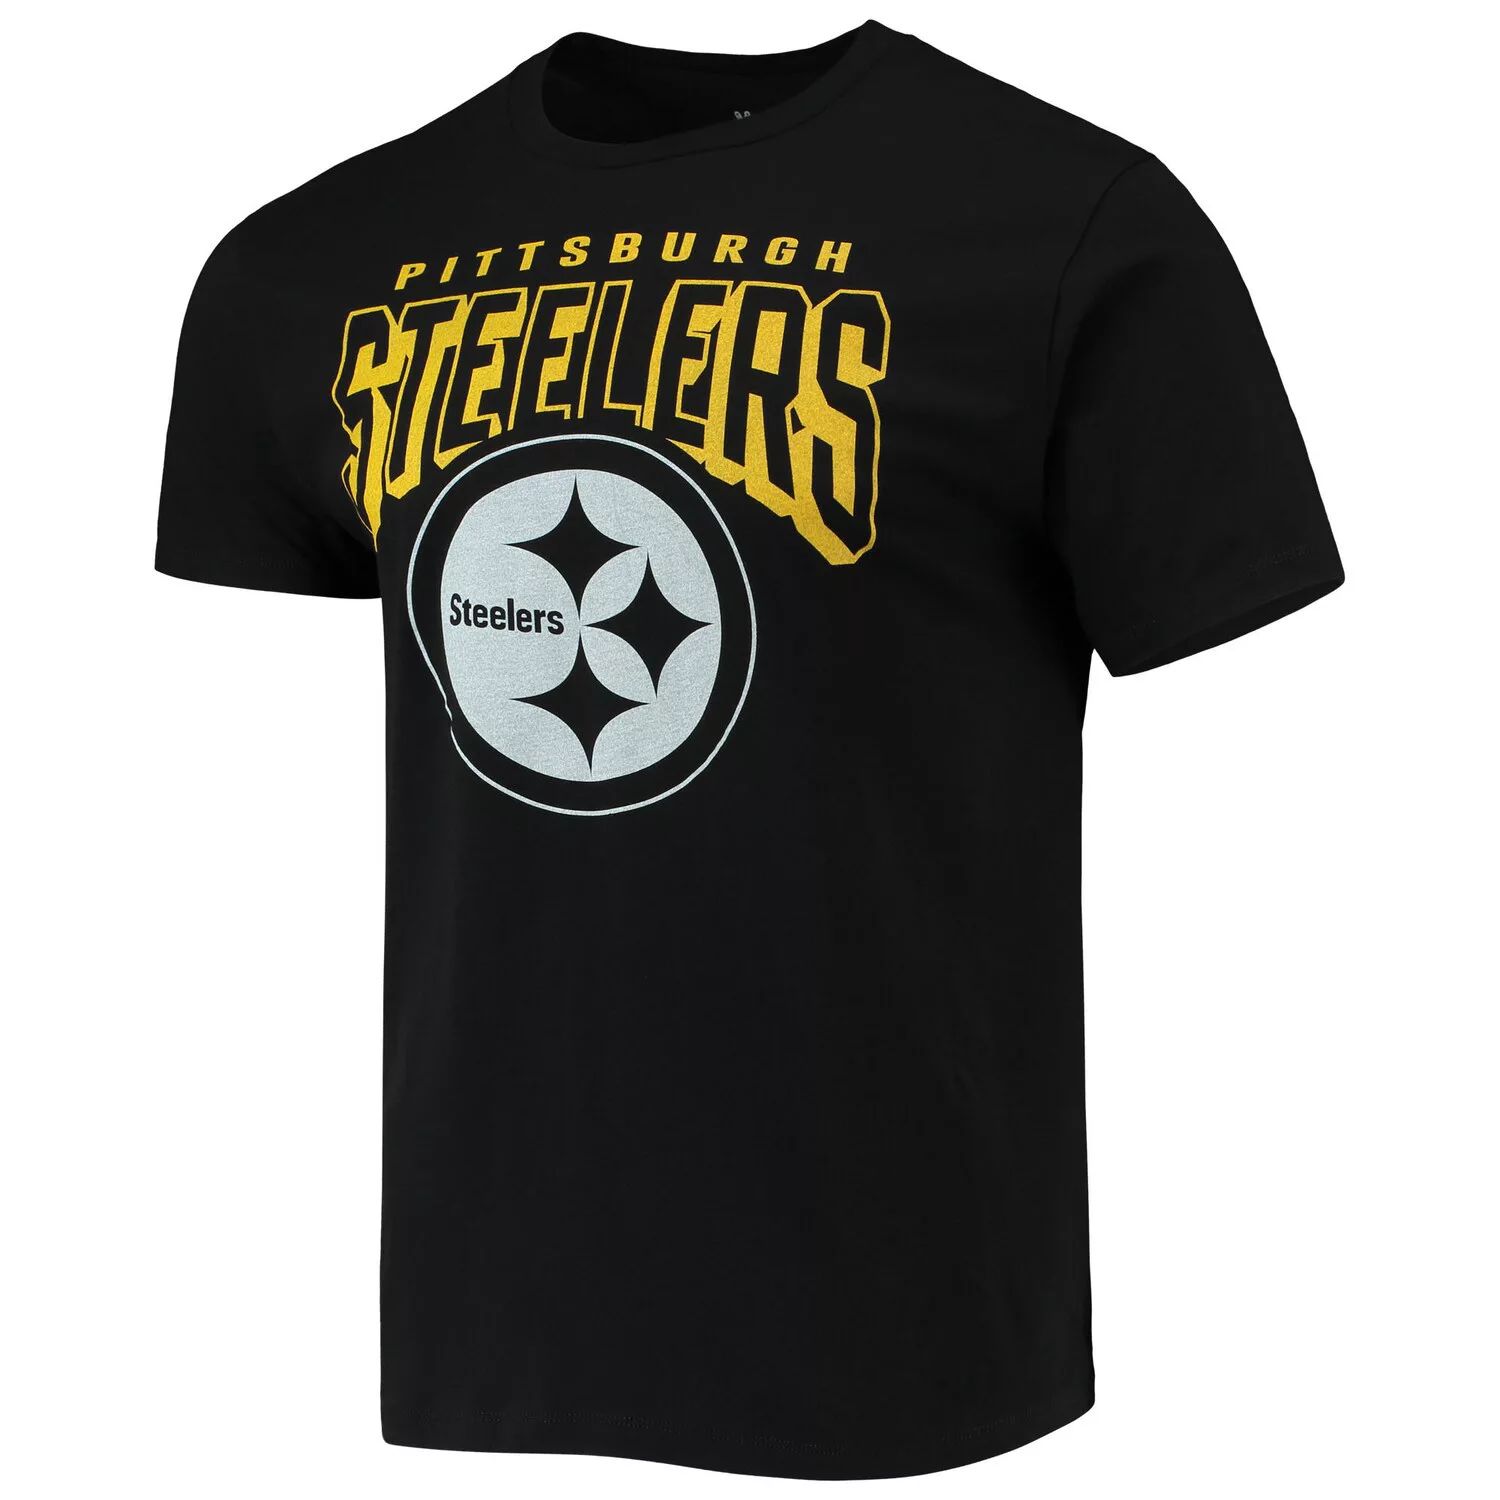 Мужская черная футболка с ярким логотипом Pittsburgh Steelers Junk Food